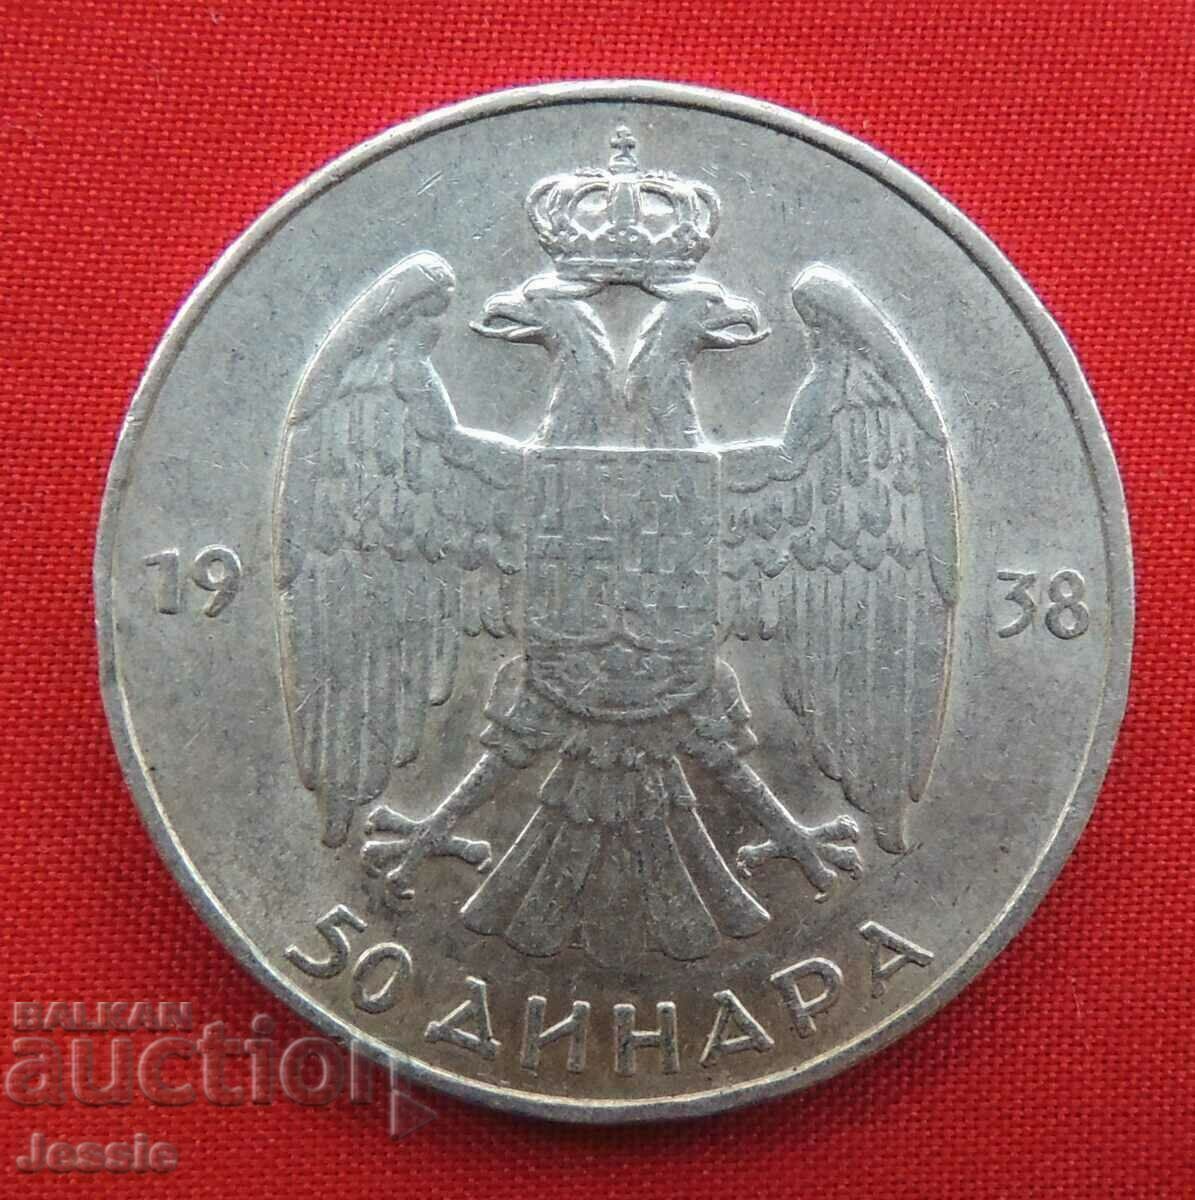 50 Δηνάρια 1938 Ασήμι Γιουγκοσλαβίας Συγκρίνετε και Βαθμολογήστε!